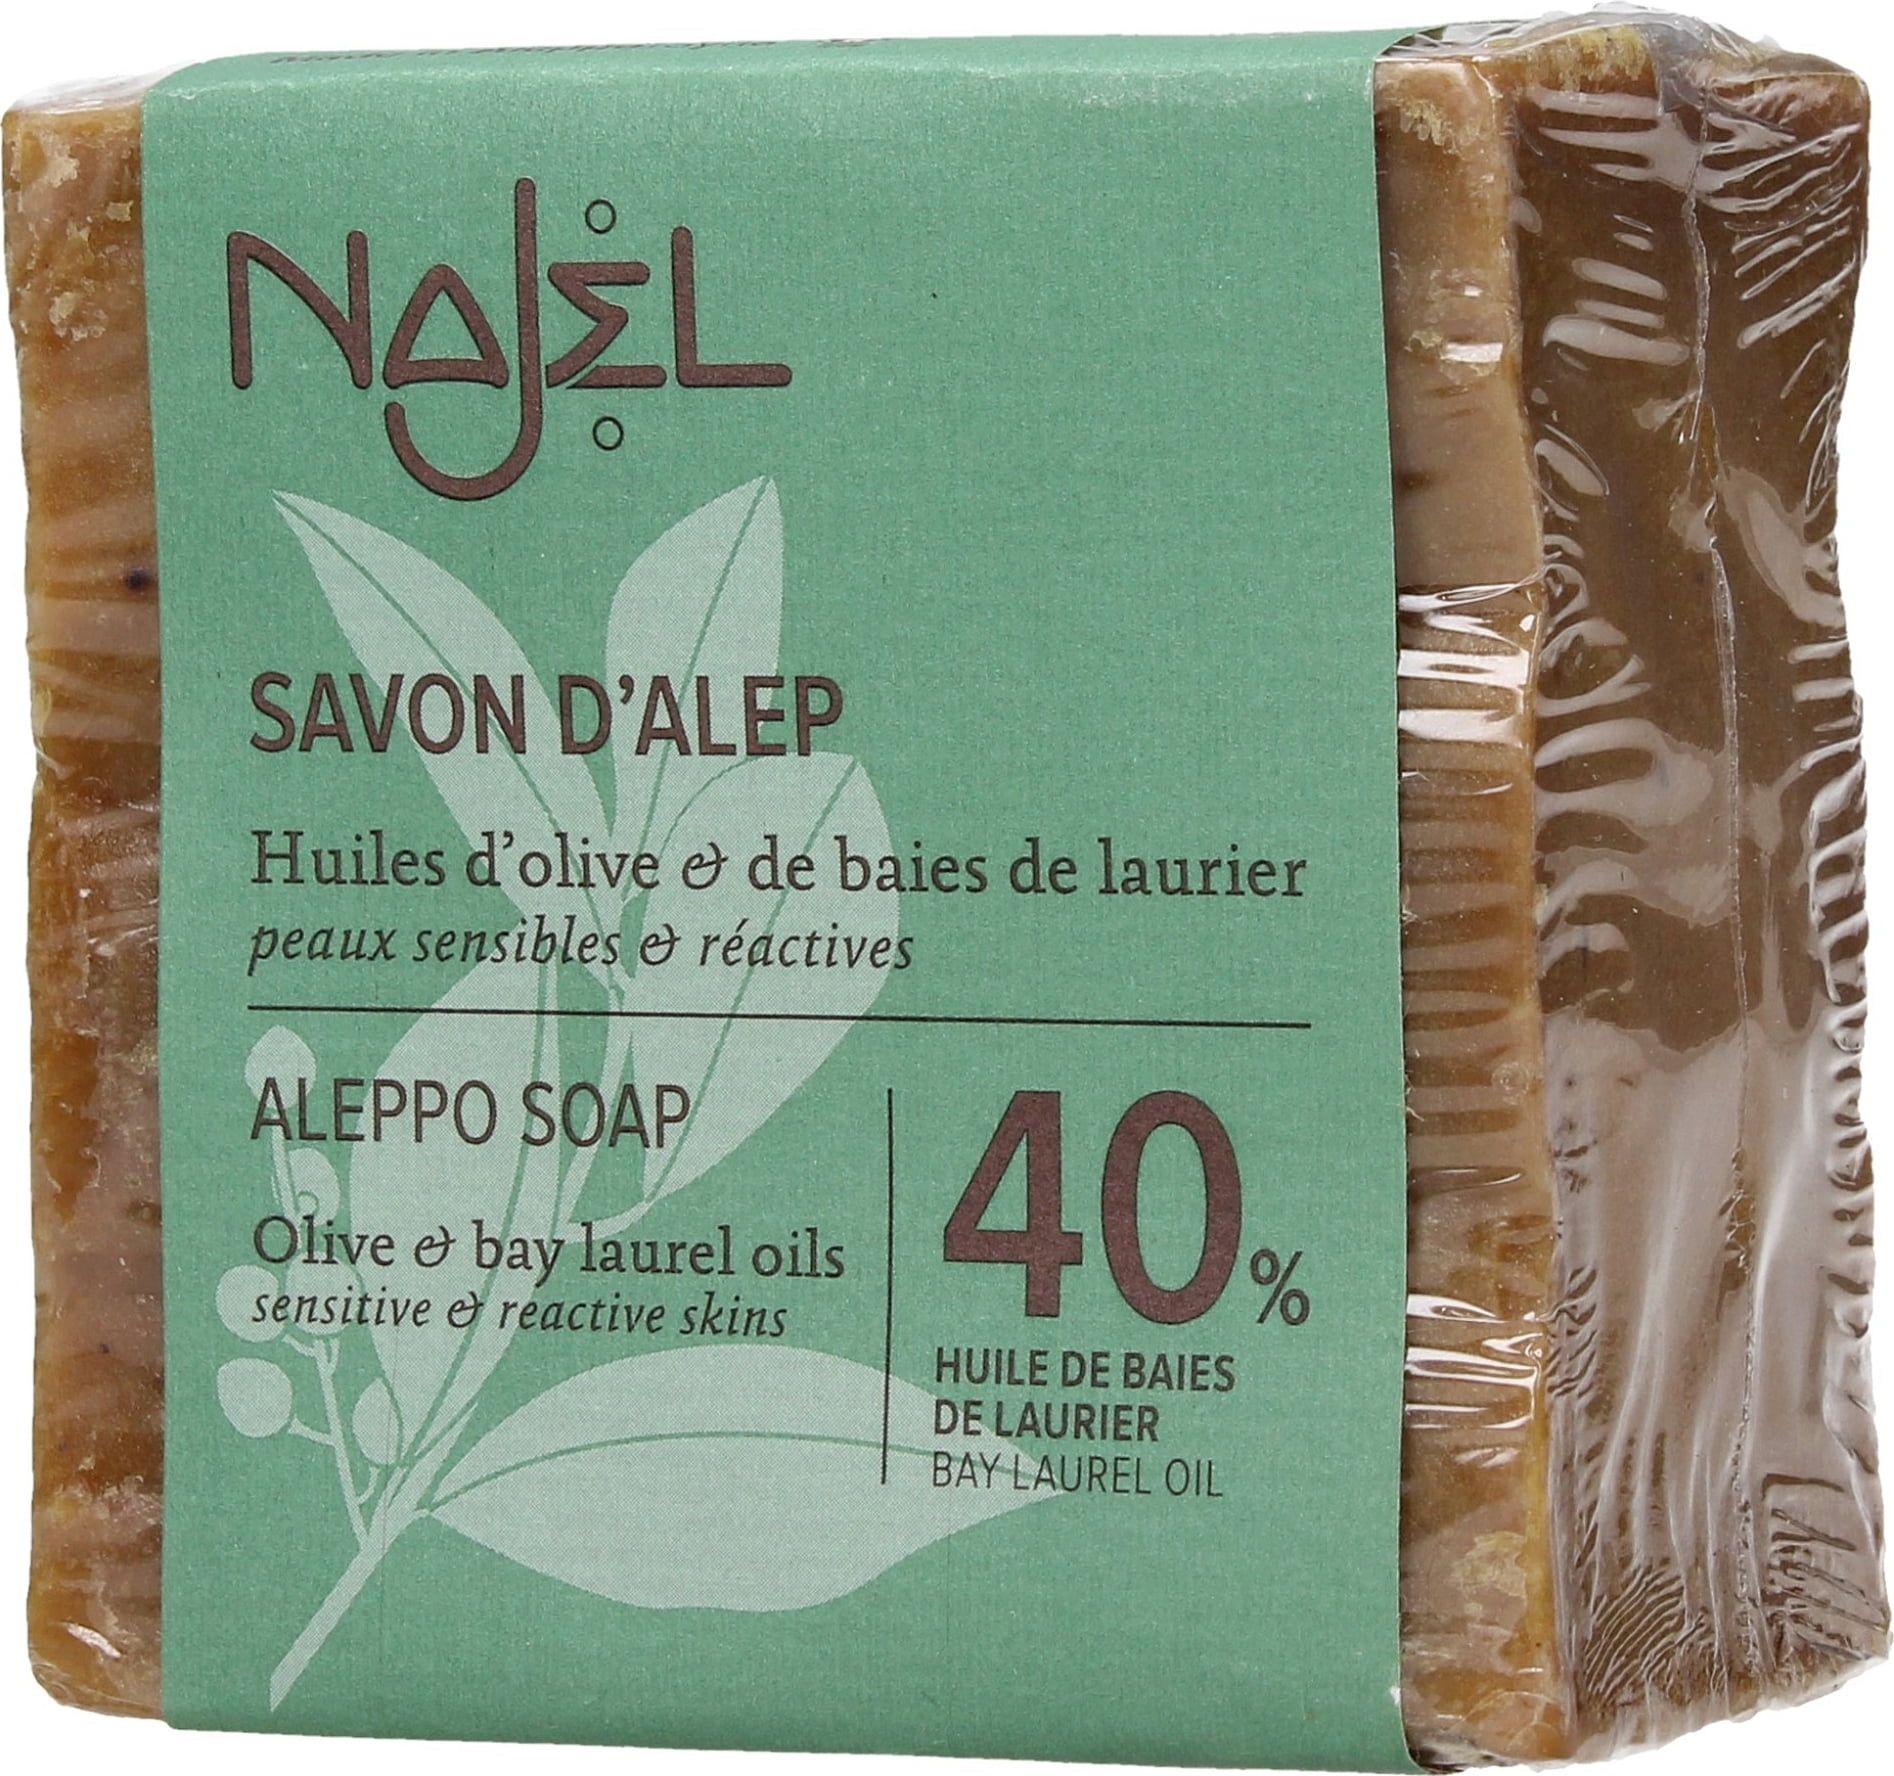 Najel Savon d'Alep 40% HBL** - 185 g